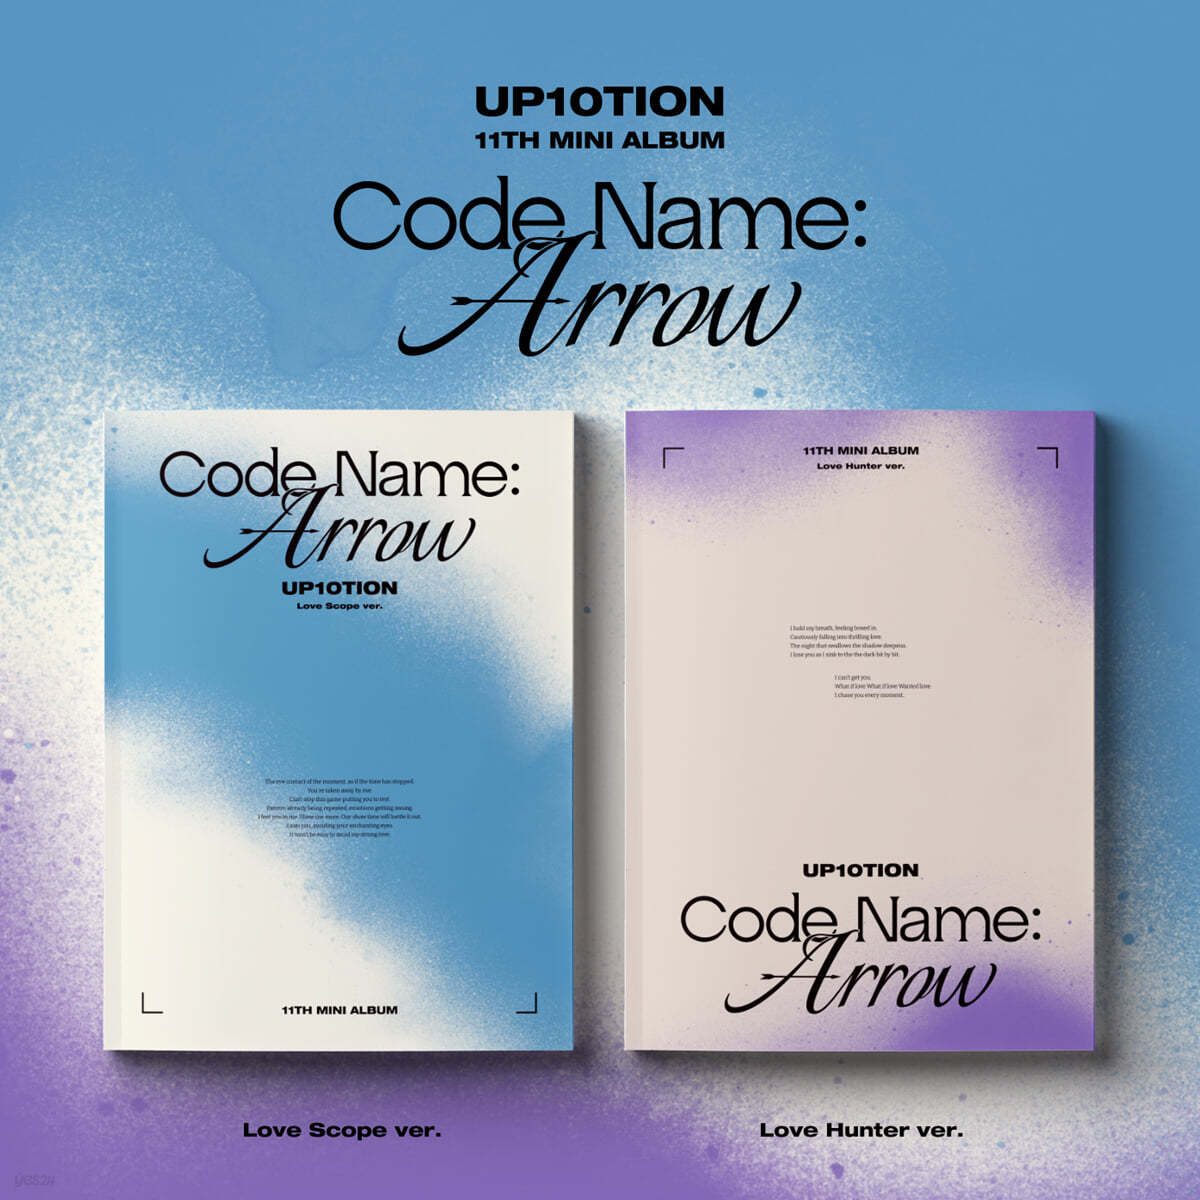 업텐션 (UP10TION) - 미니앨범 11집 : Code Name: Arrow [SET]